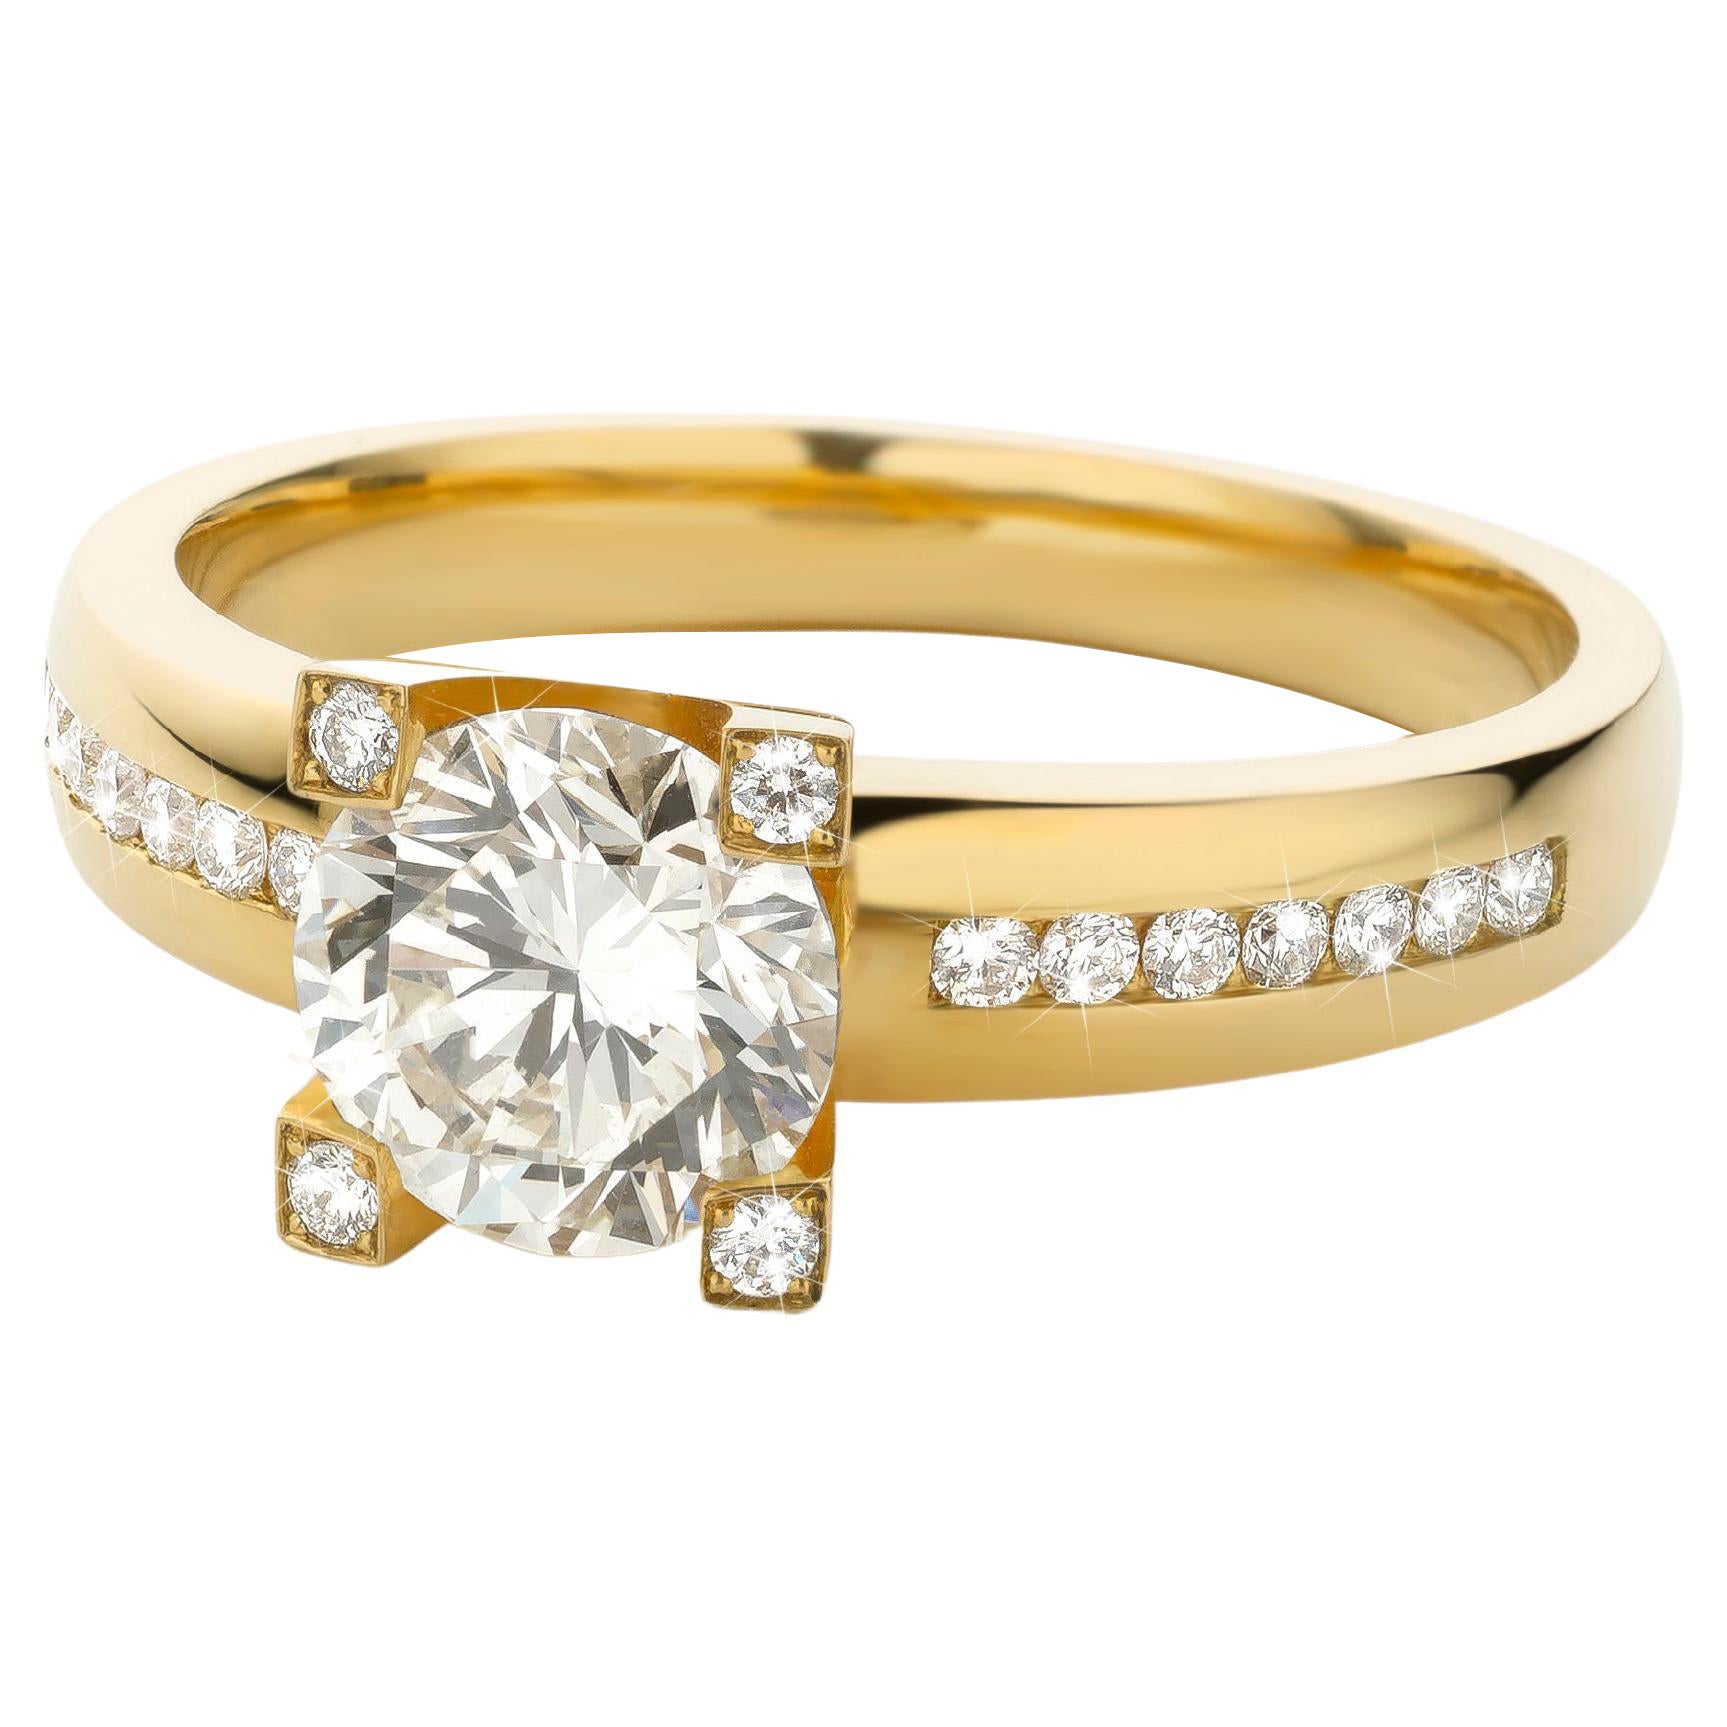 Cober “Big Solitair” 1.27 Carat Yellow Diamond & 18 Diamonds Yellow Gold Ring 